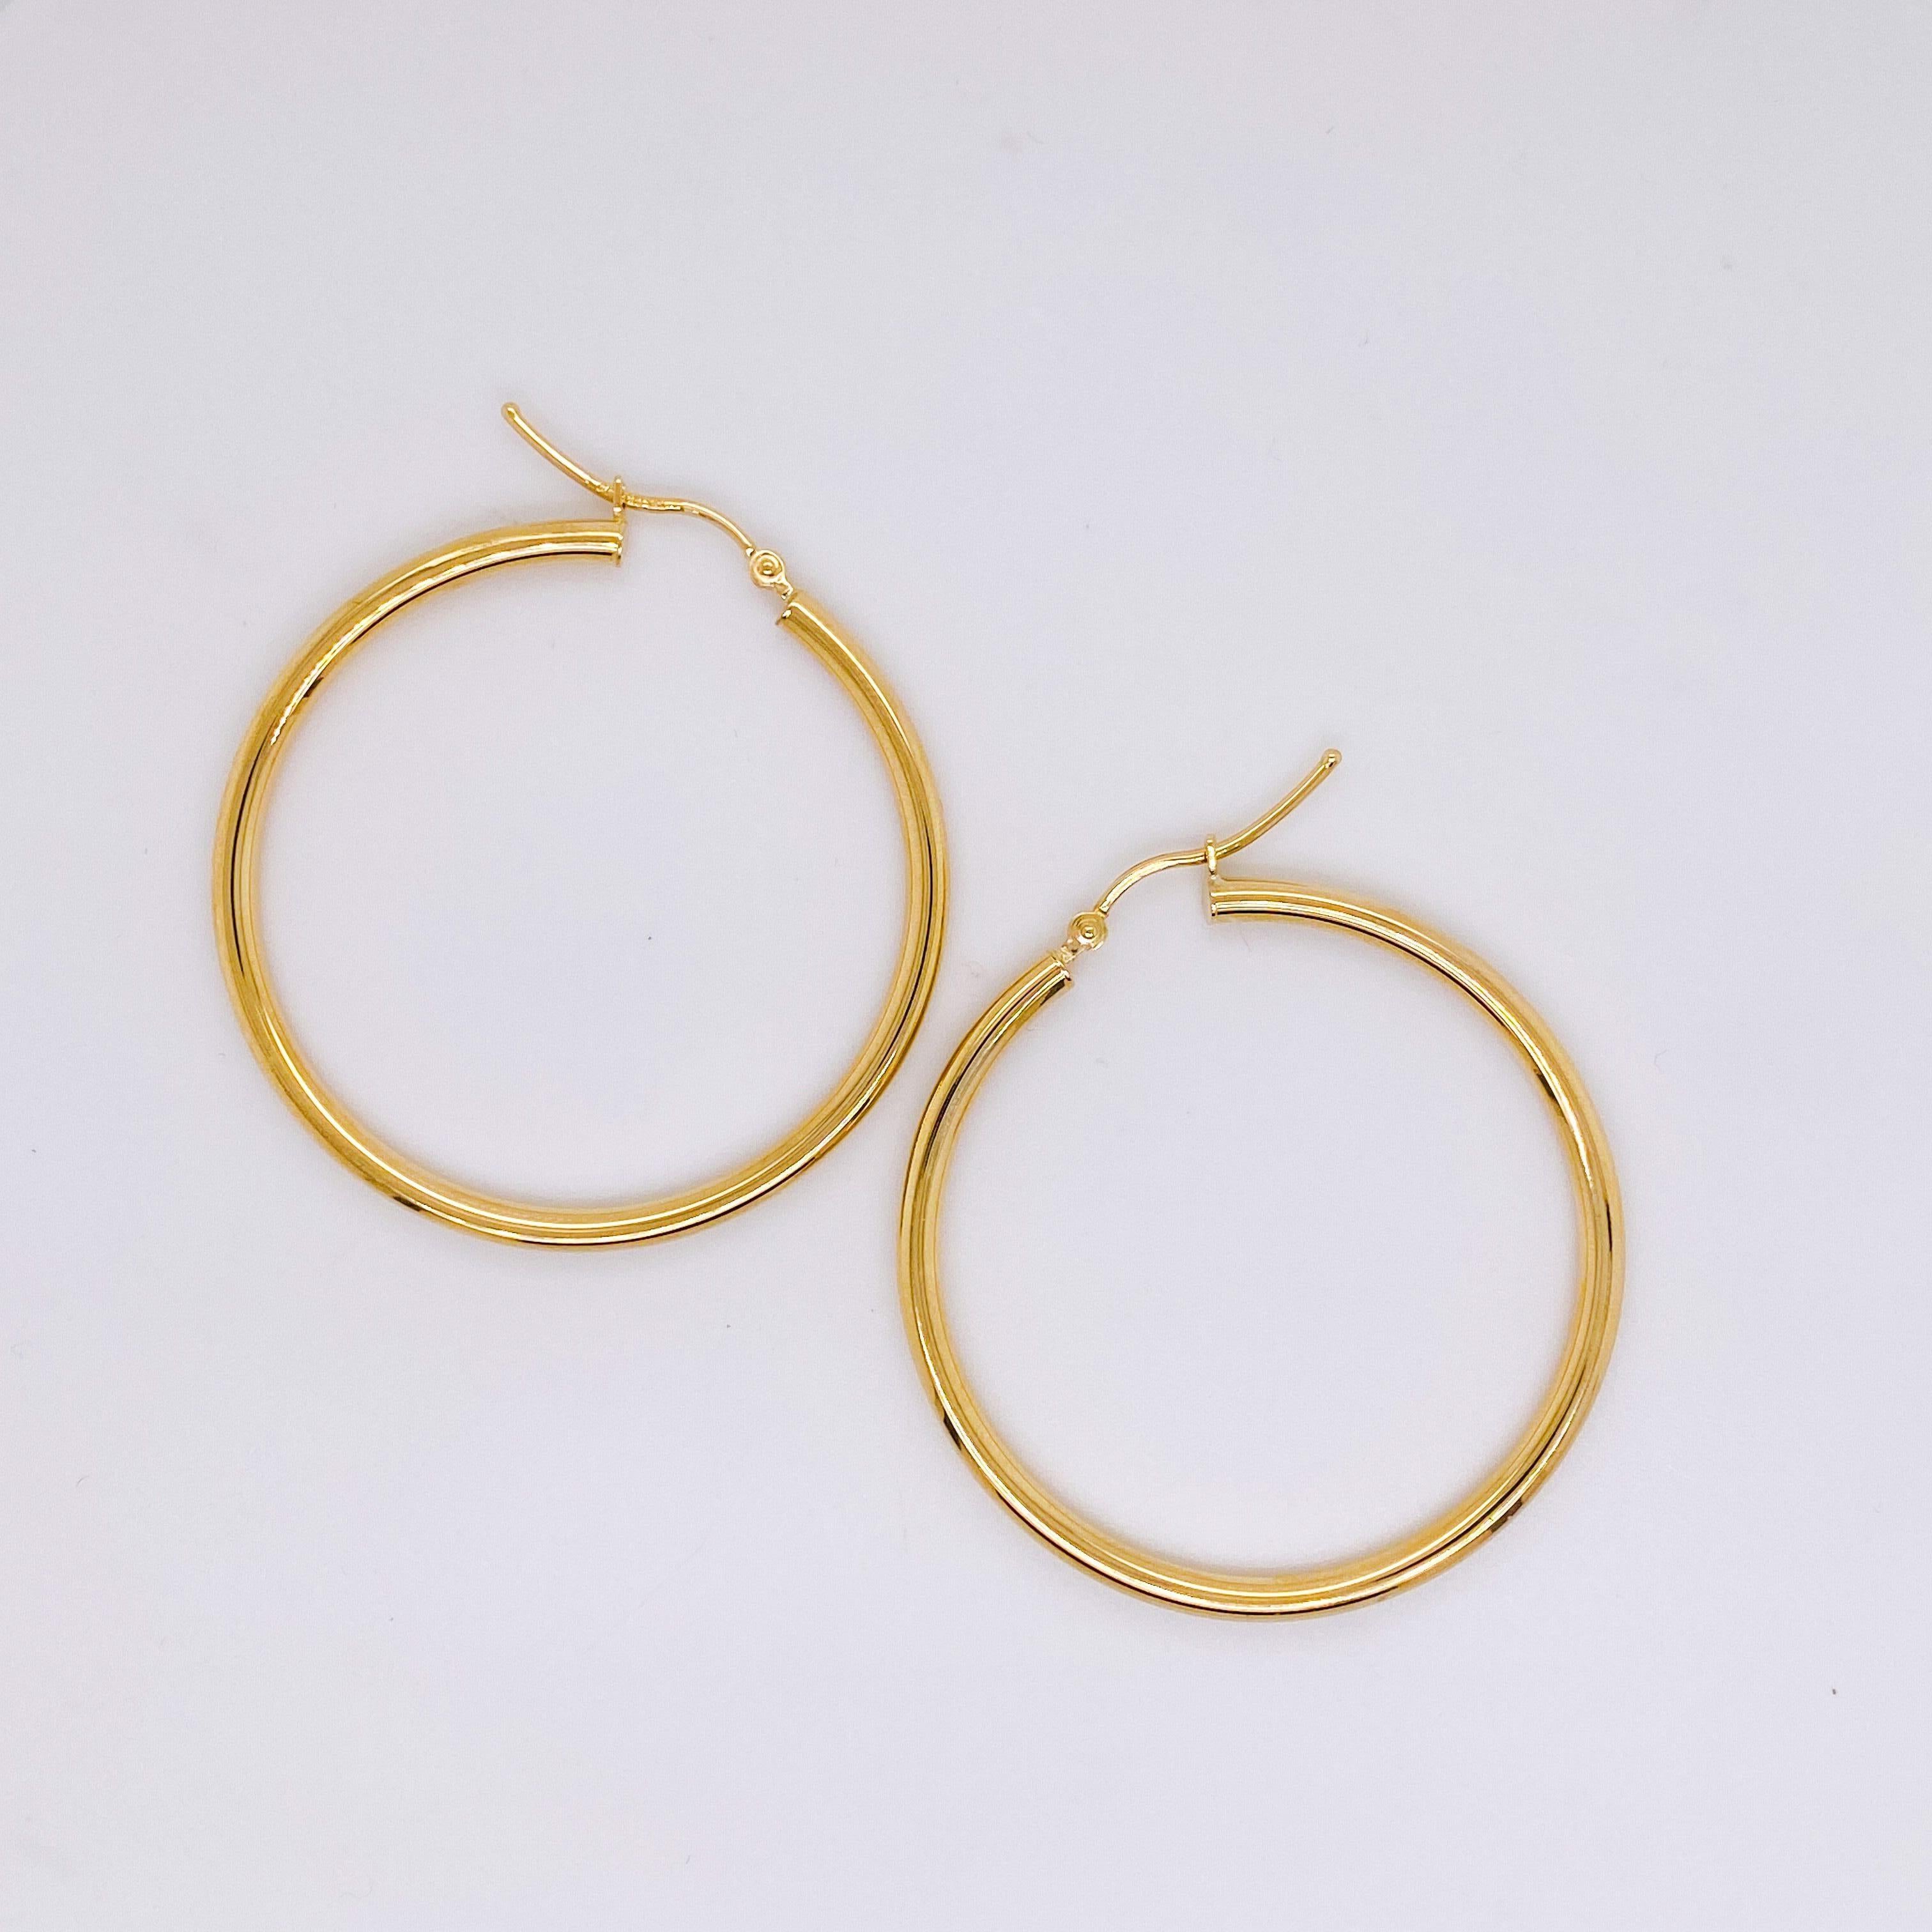 1.5 inch hoop earrings